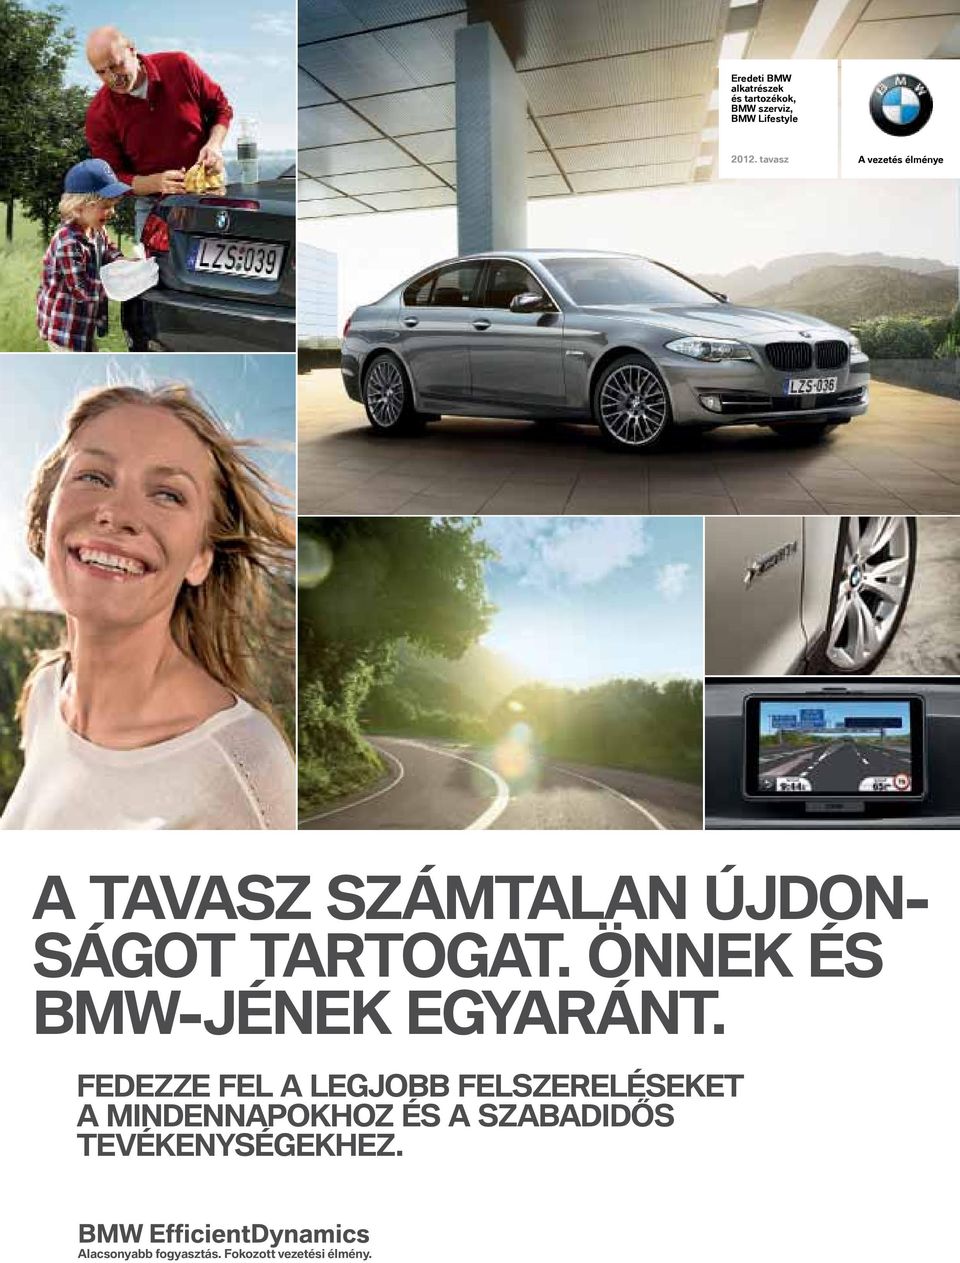 ÖNNEK ÉS BMW-JÉNEK EGYARÁNT.